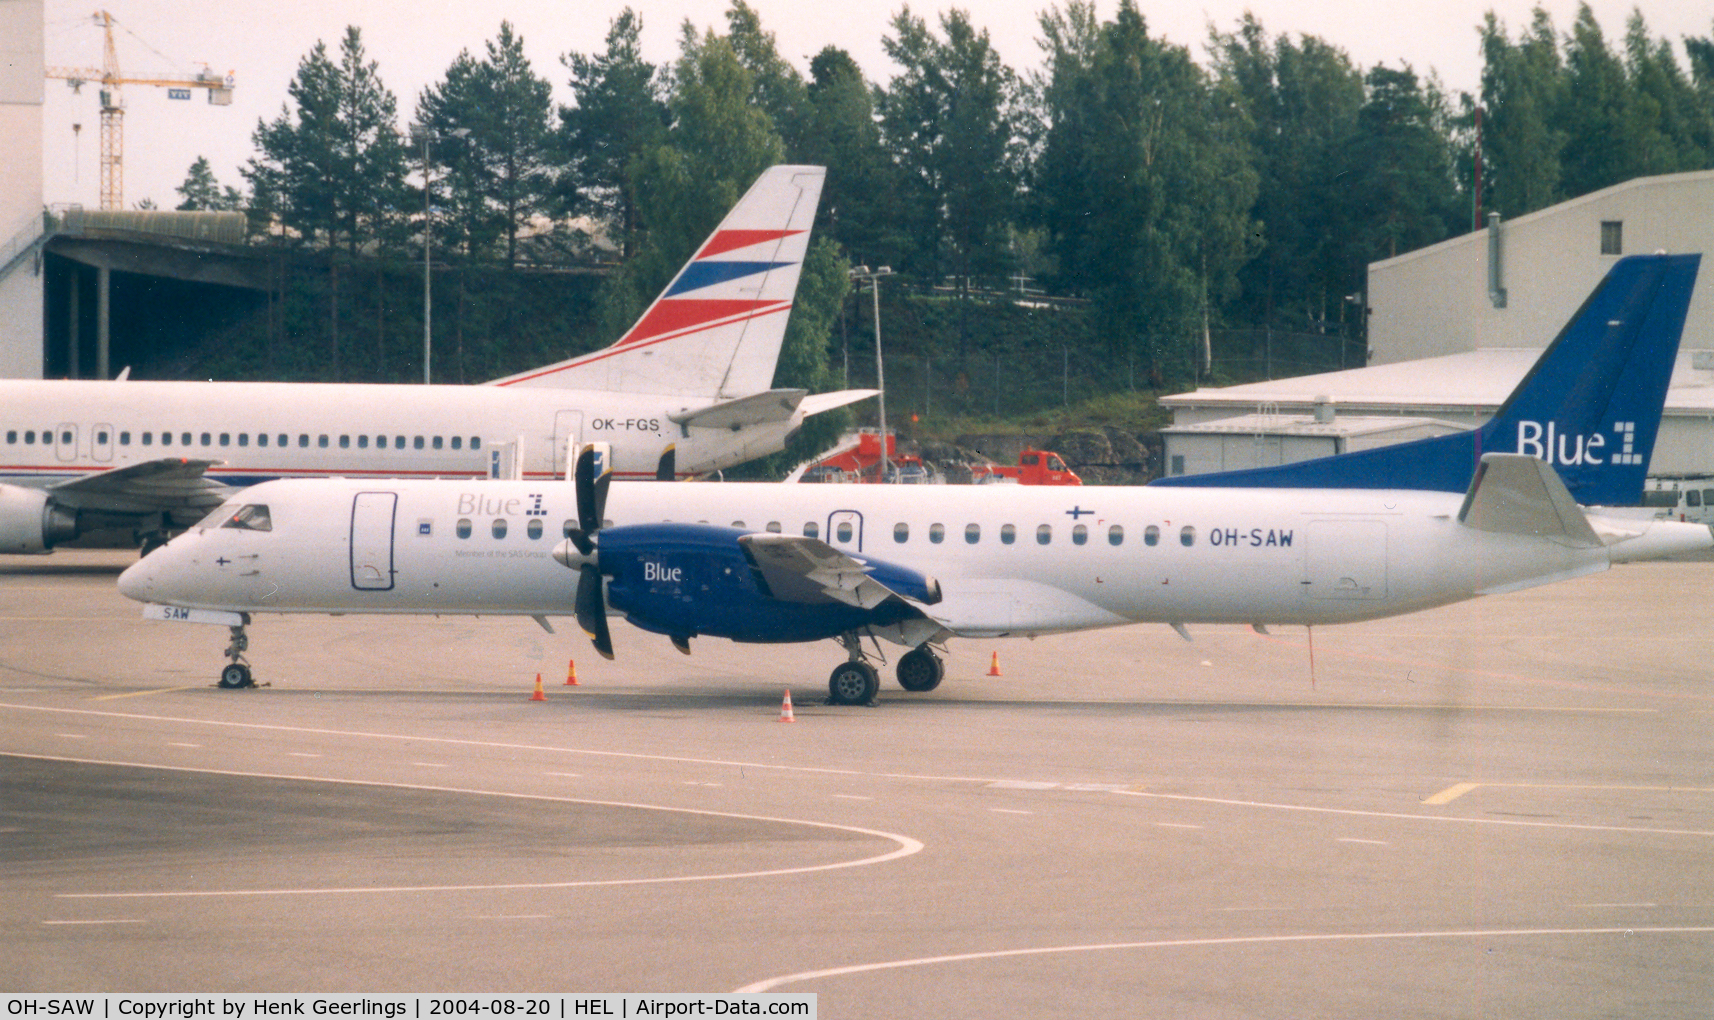 OH-SAW, 1997 Saab 2000 C/N 2000-046, Blue 1